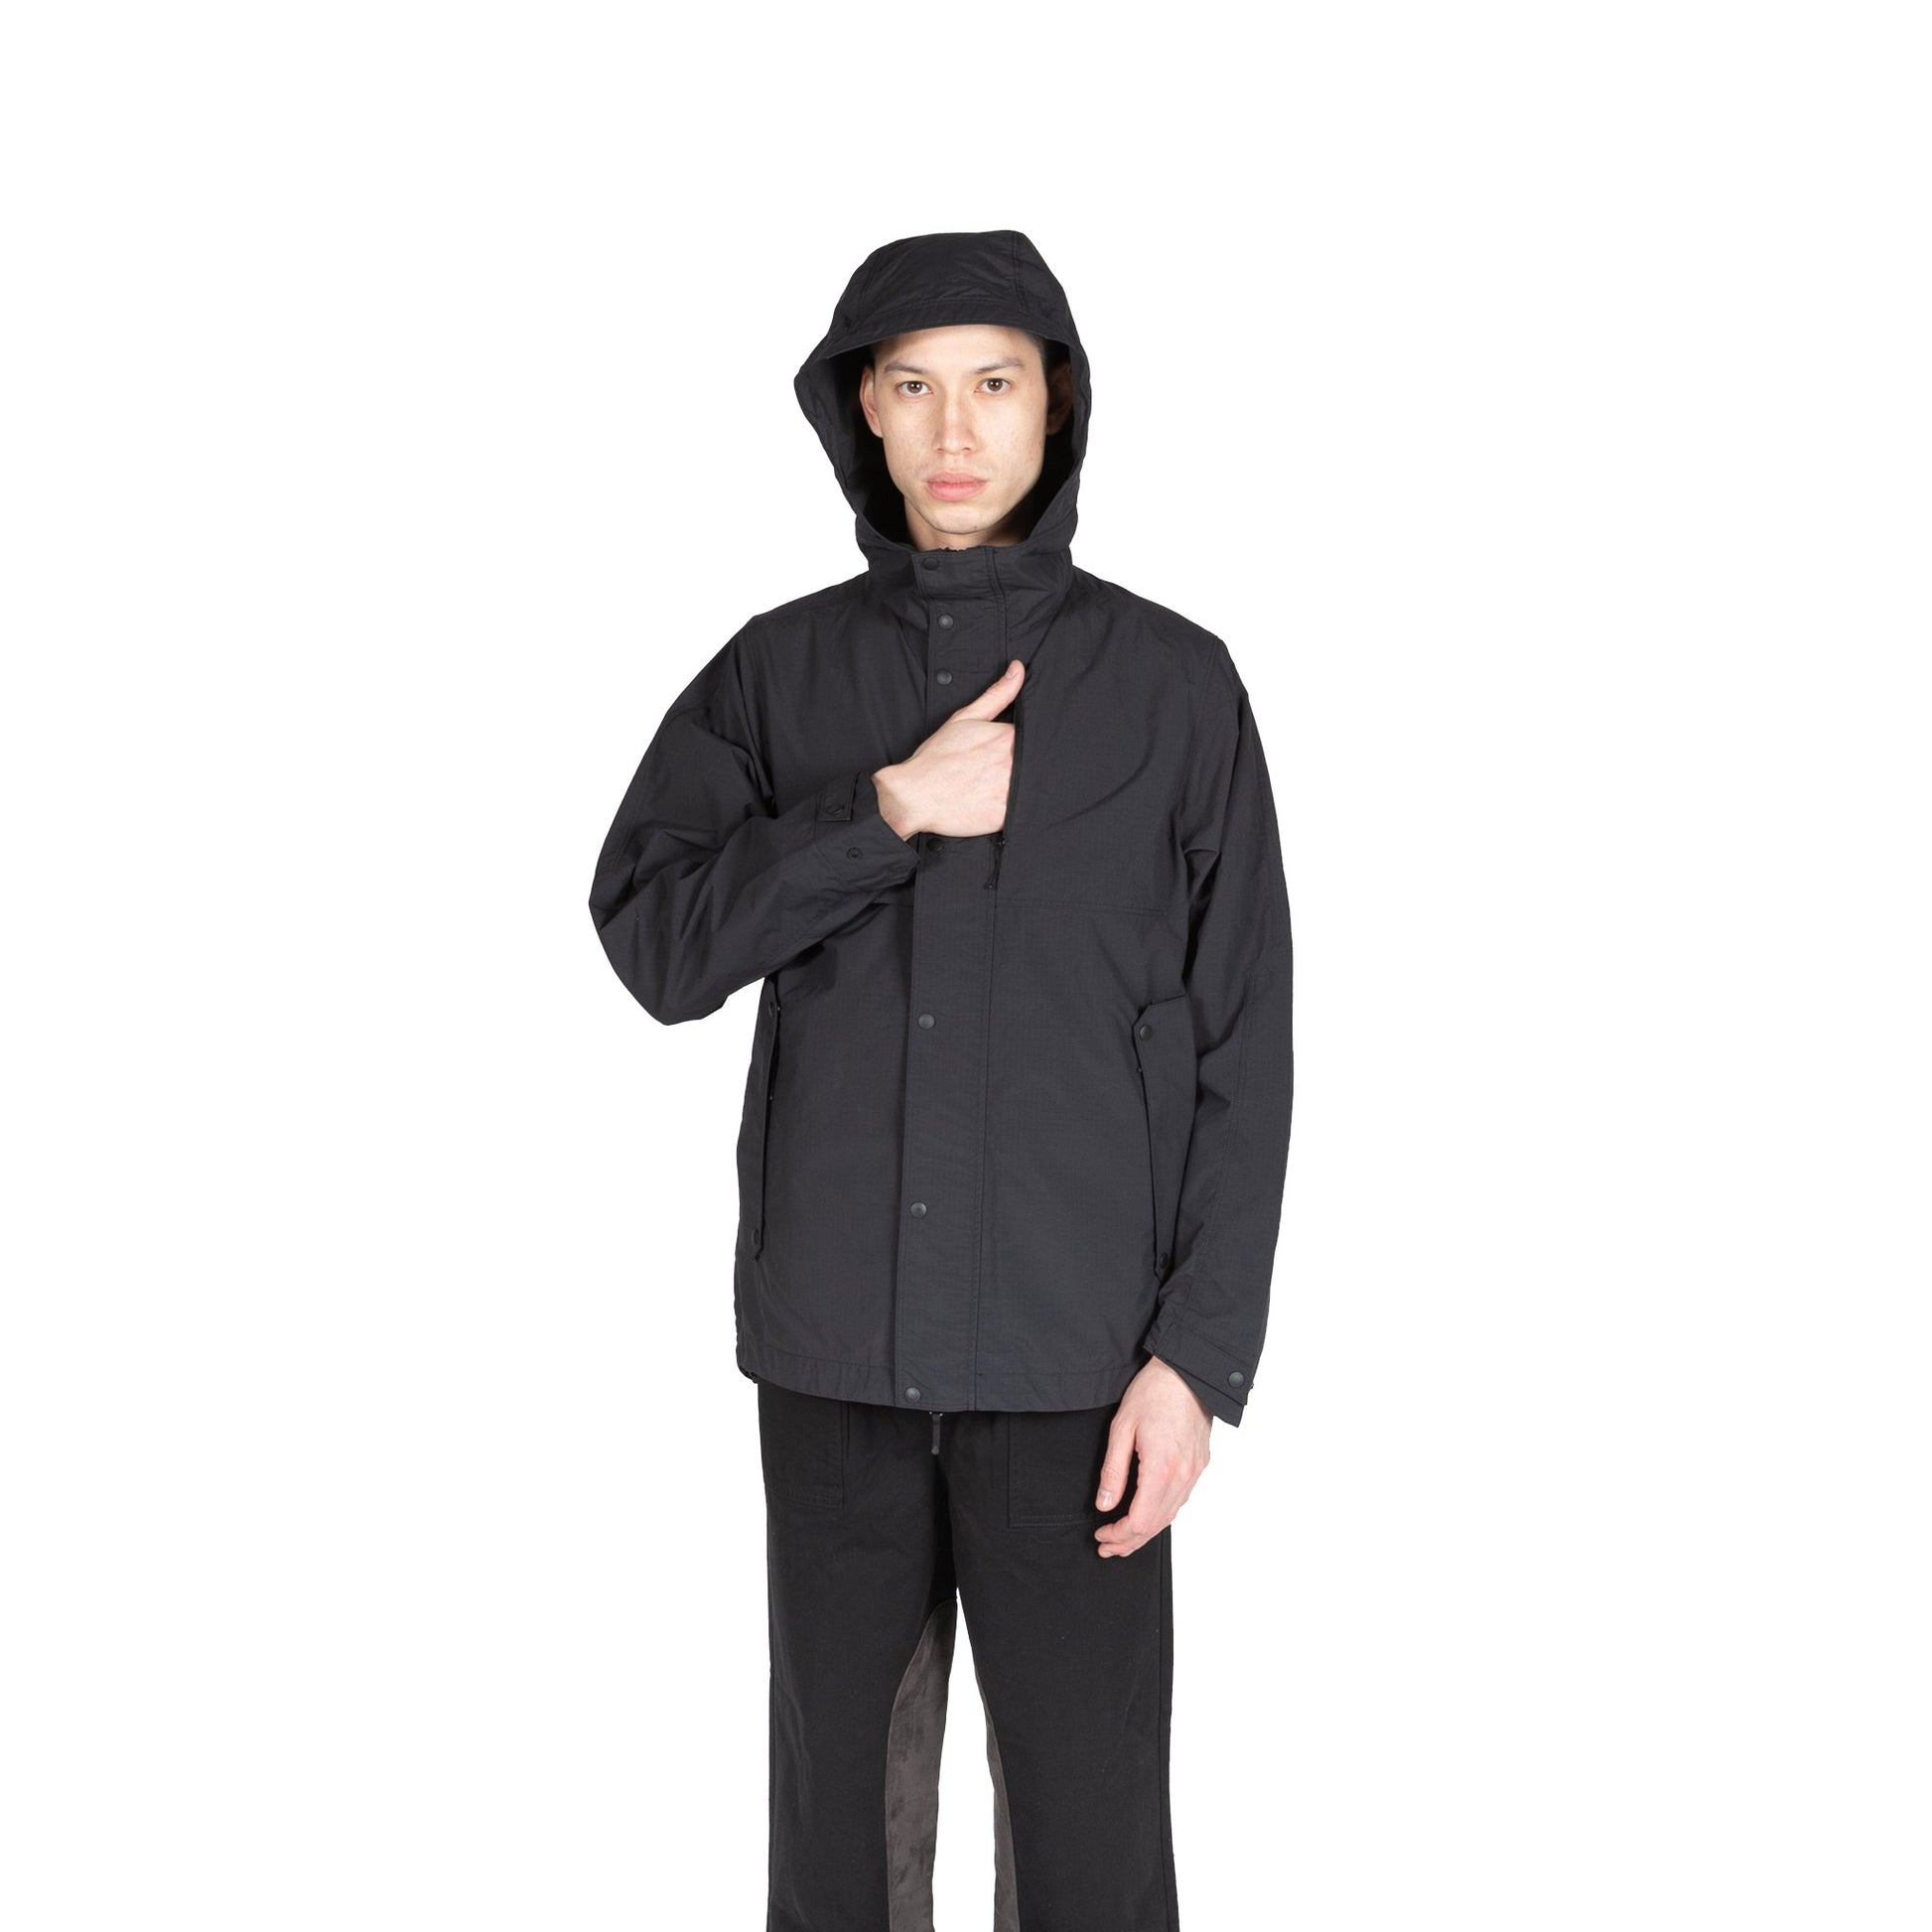 Goldwin Hooded Blouson Black rain gear all weather sportswear outerwear hooded